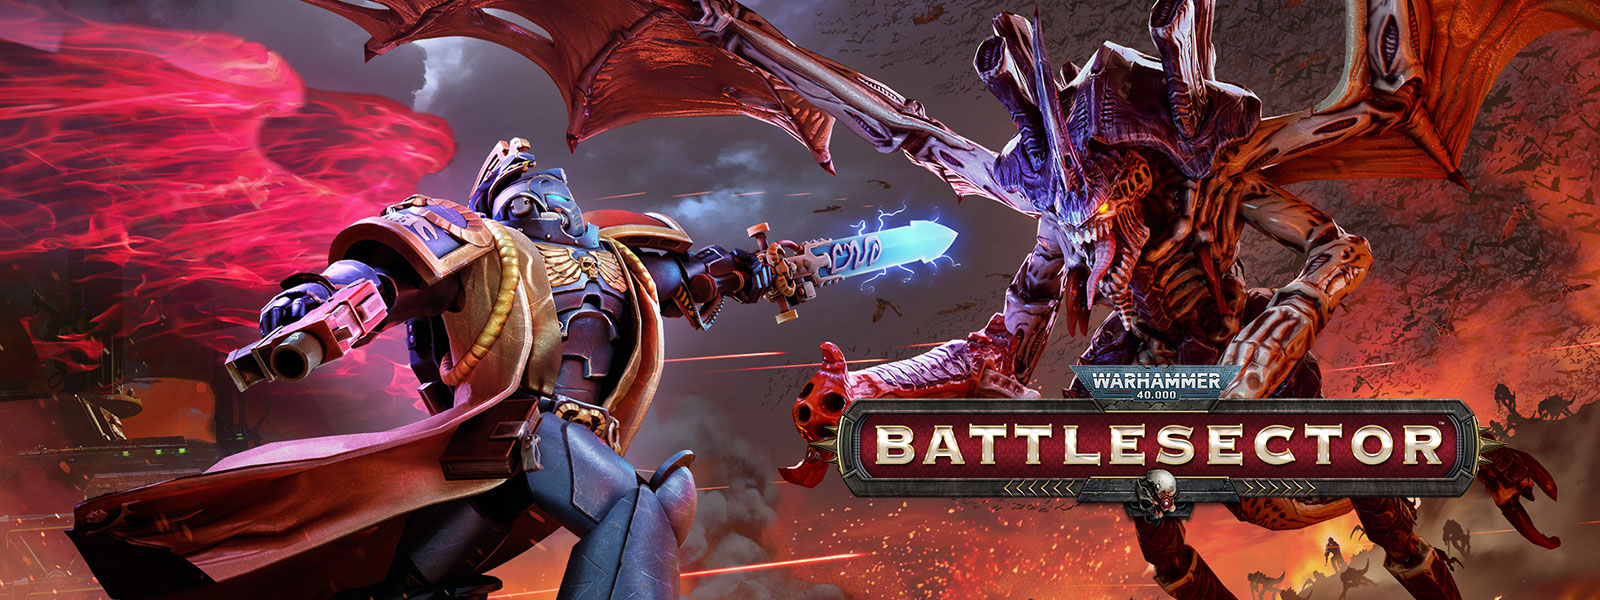 Warhammer 40,000: Battlesector, En Librarian møder Hive Tyrant i kamp.